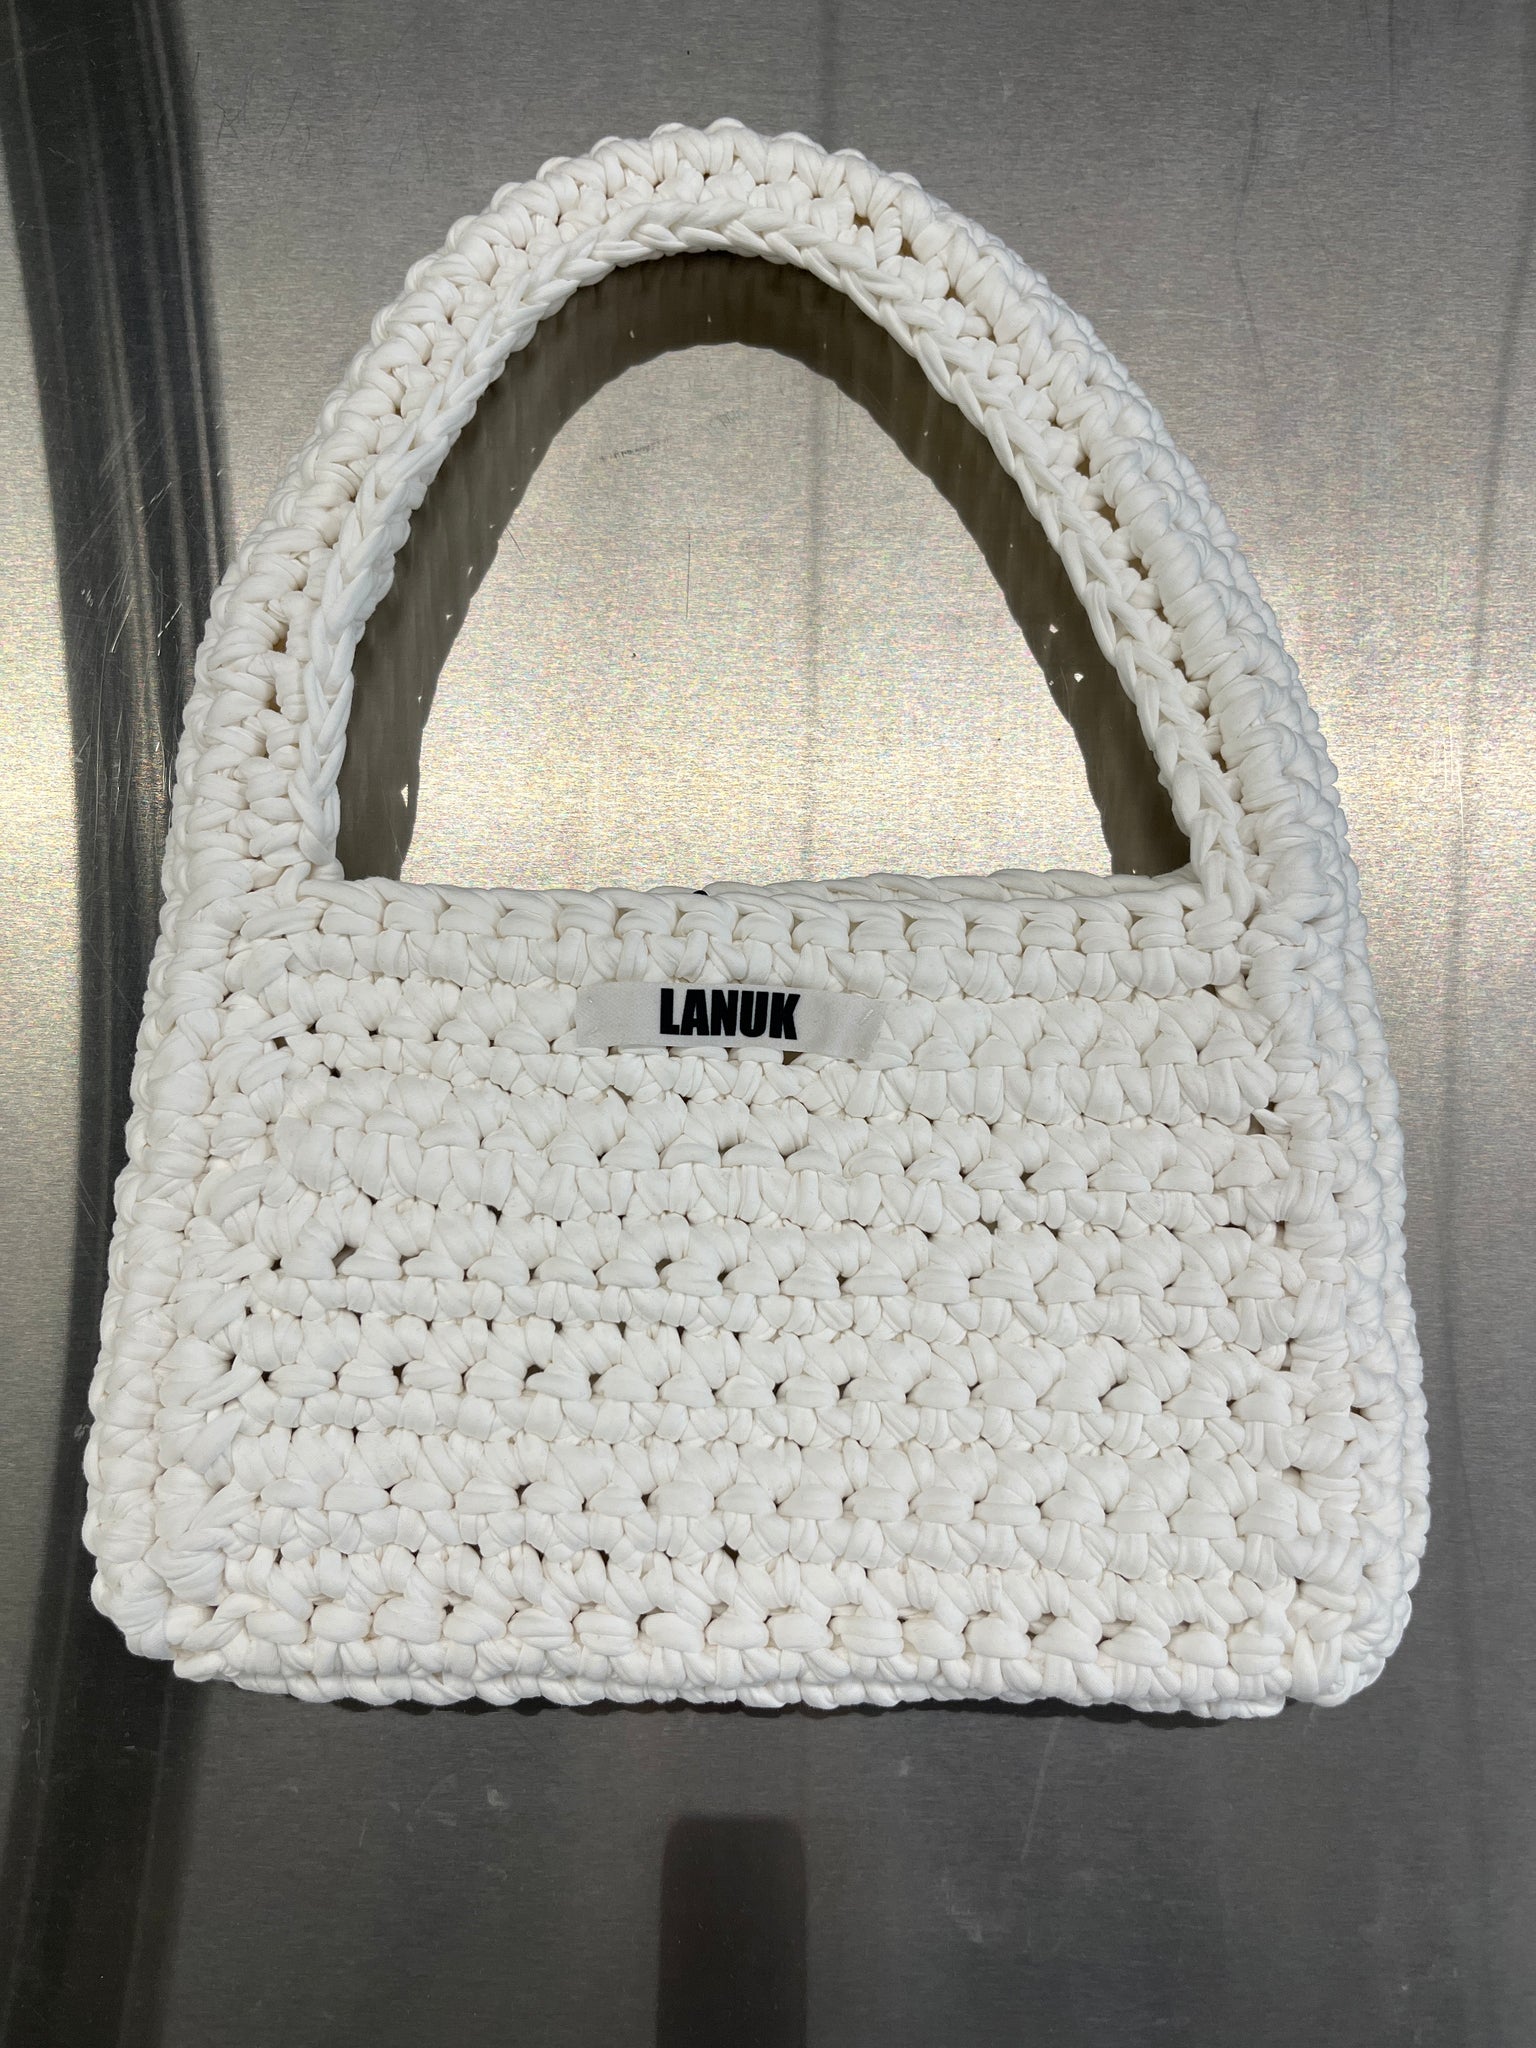 Crochet bag by LANUK studios - white